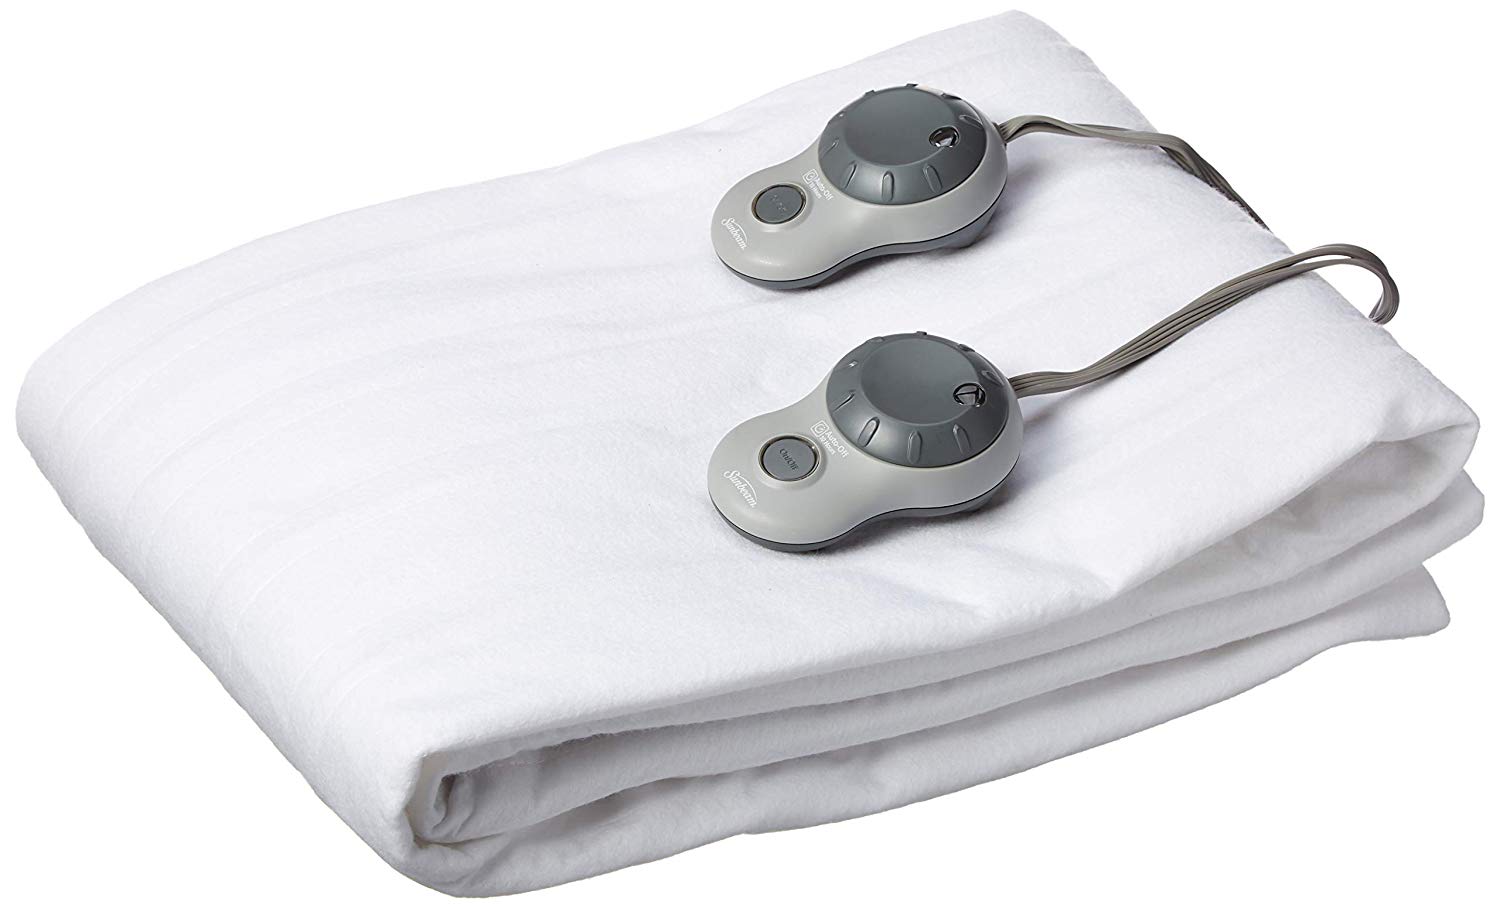 heater mattress pads for rv